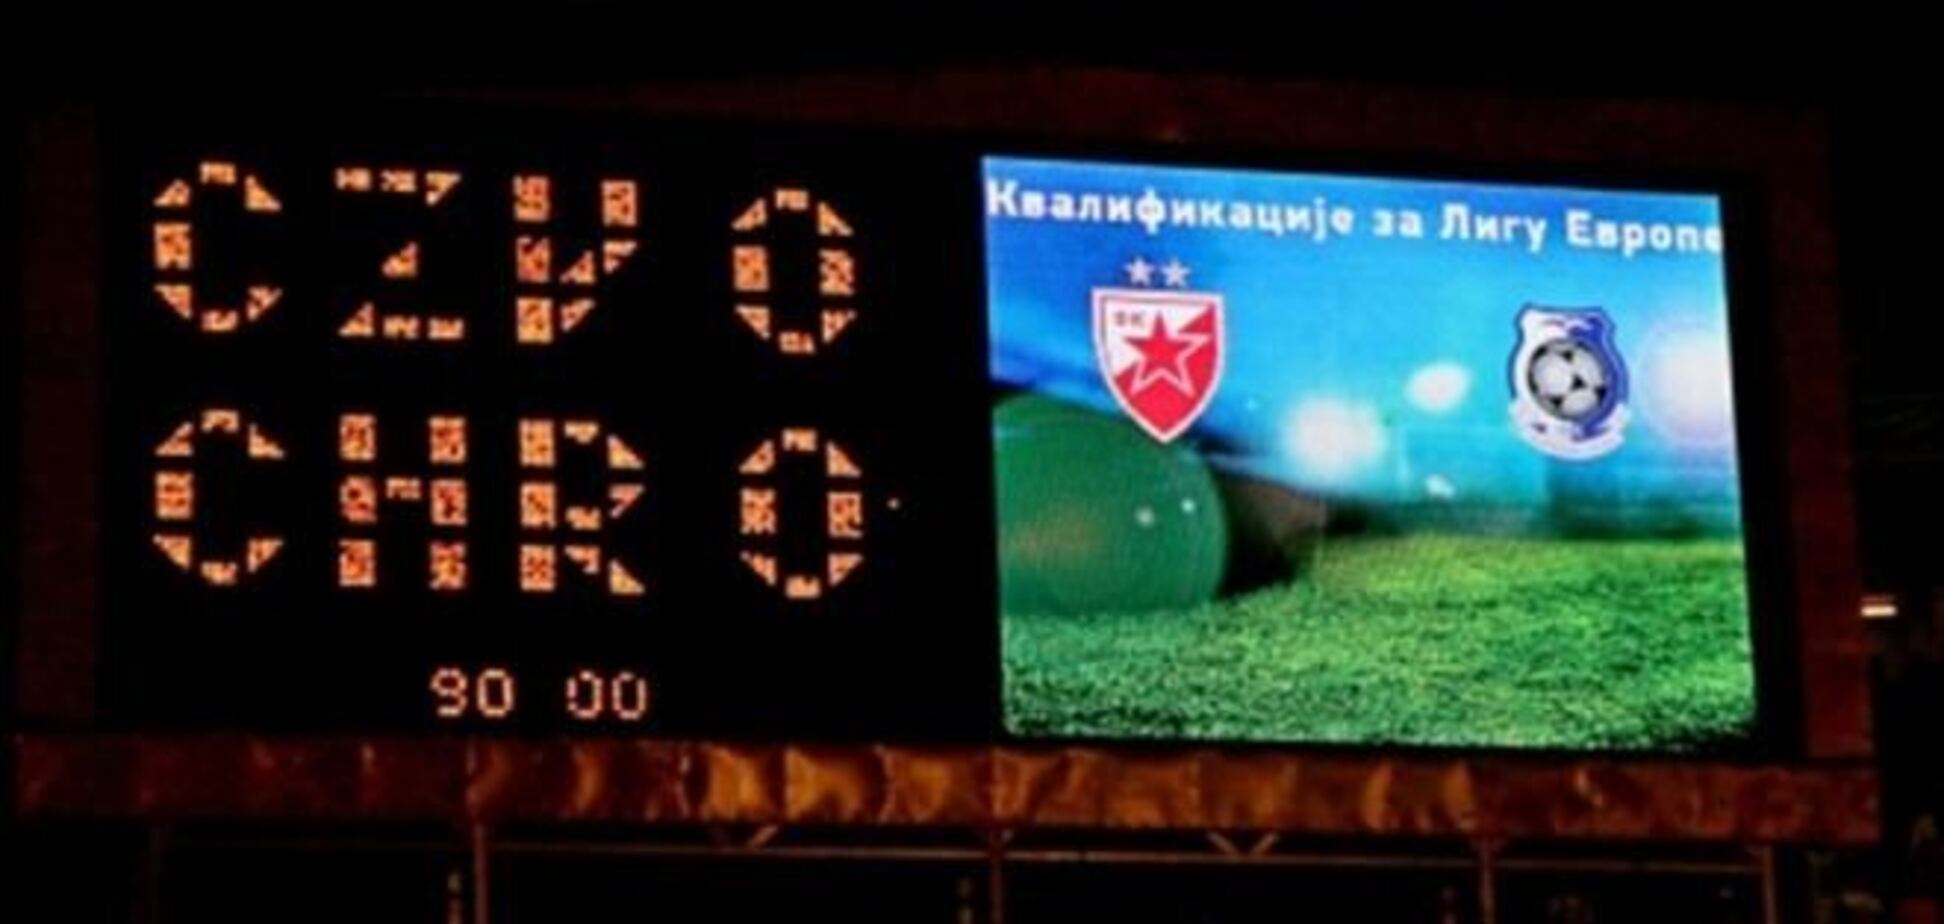 'Црвена звезда' оштрафована за матч против 'Черноморца'